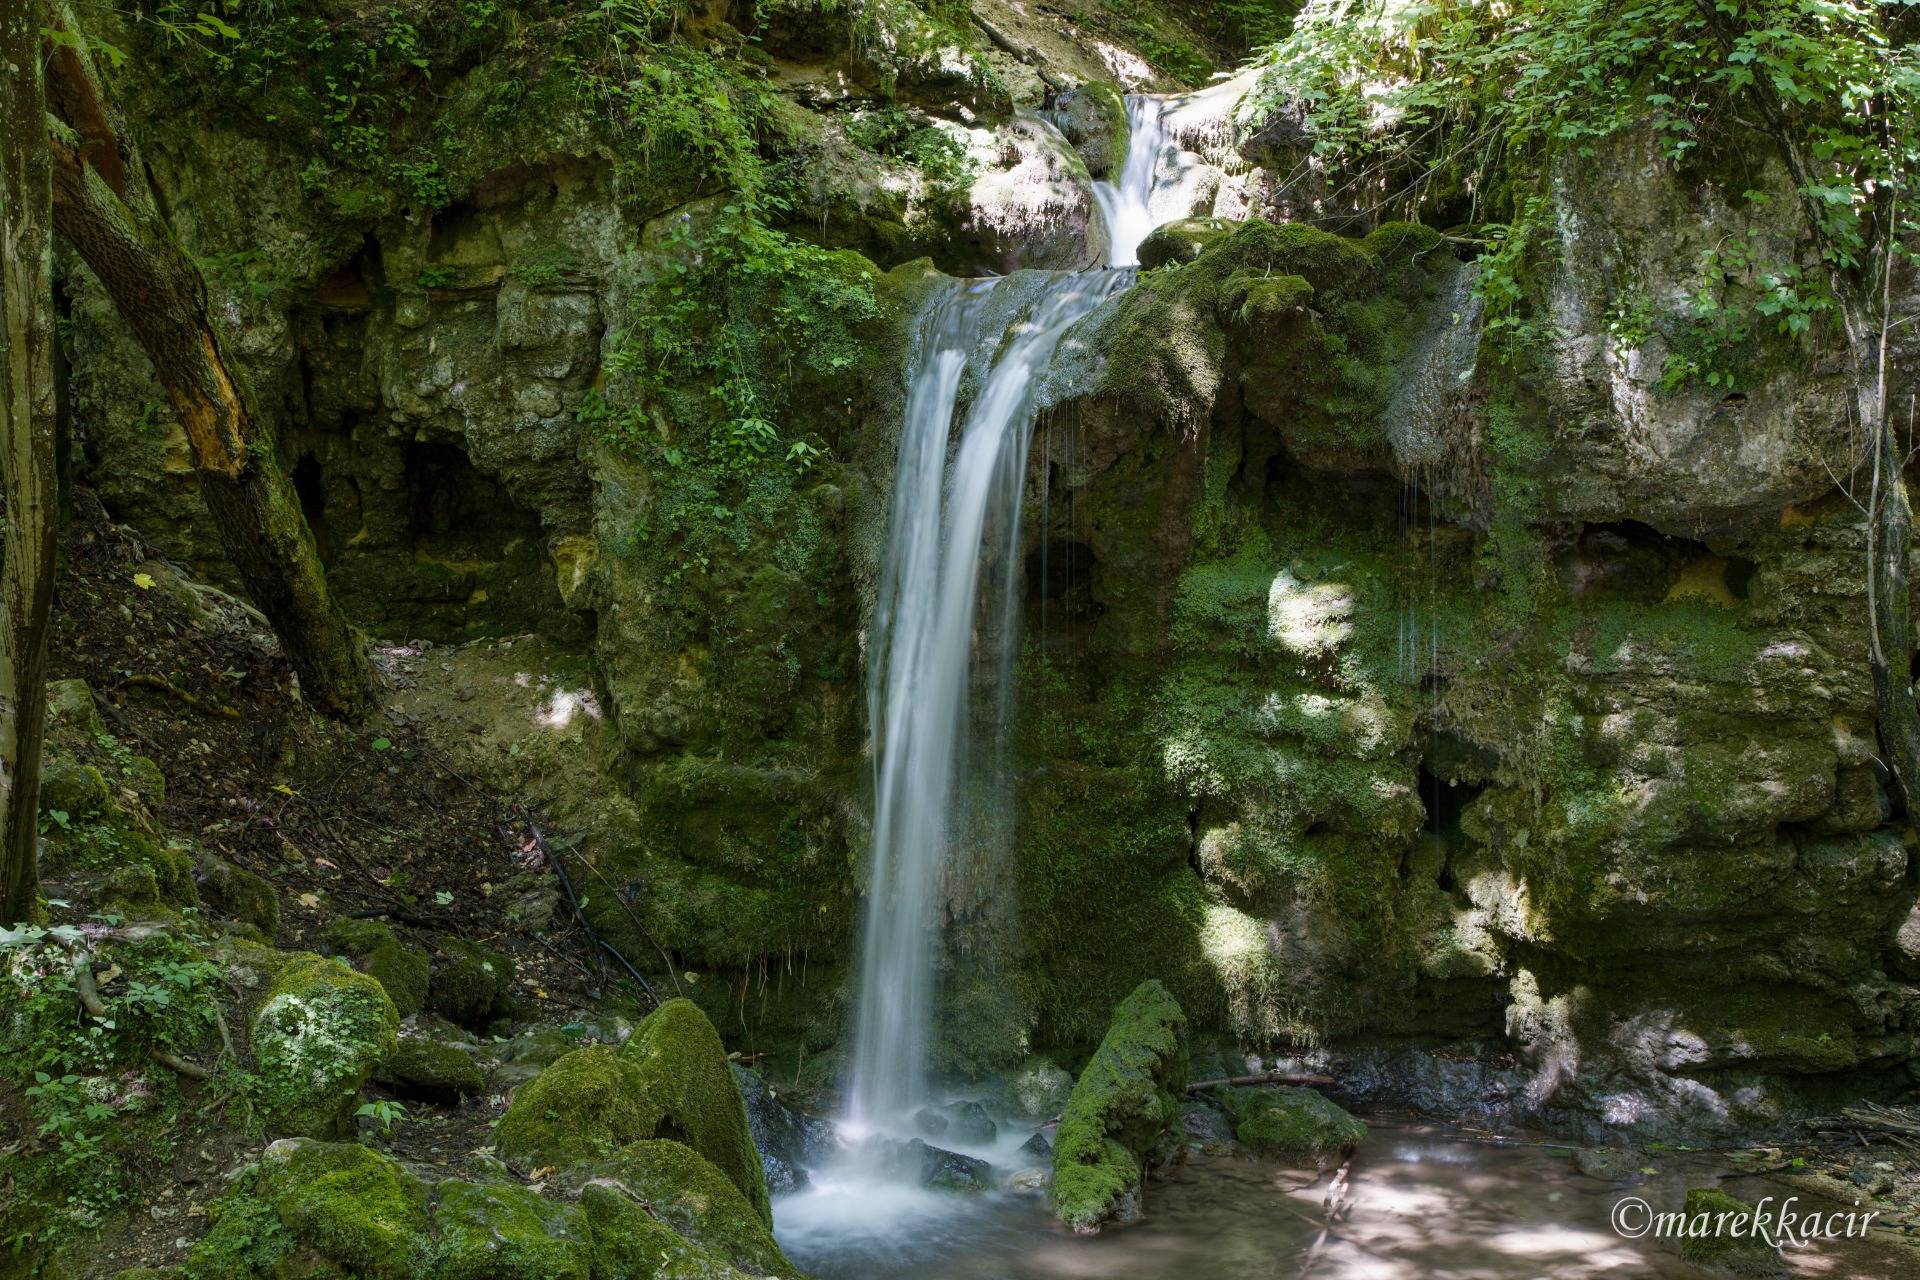 Middle Hájsky waterfall